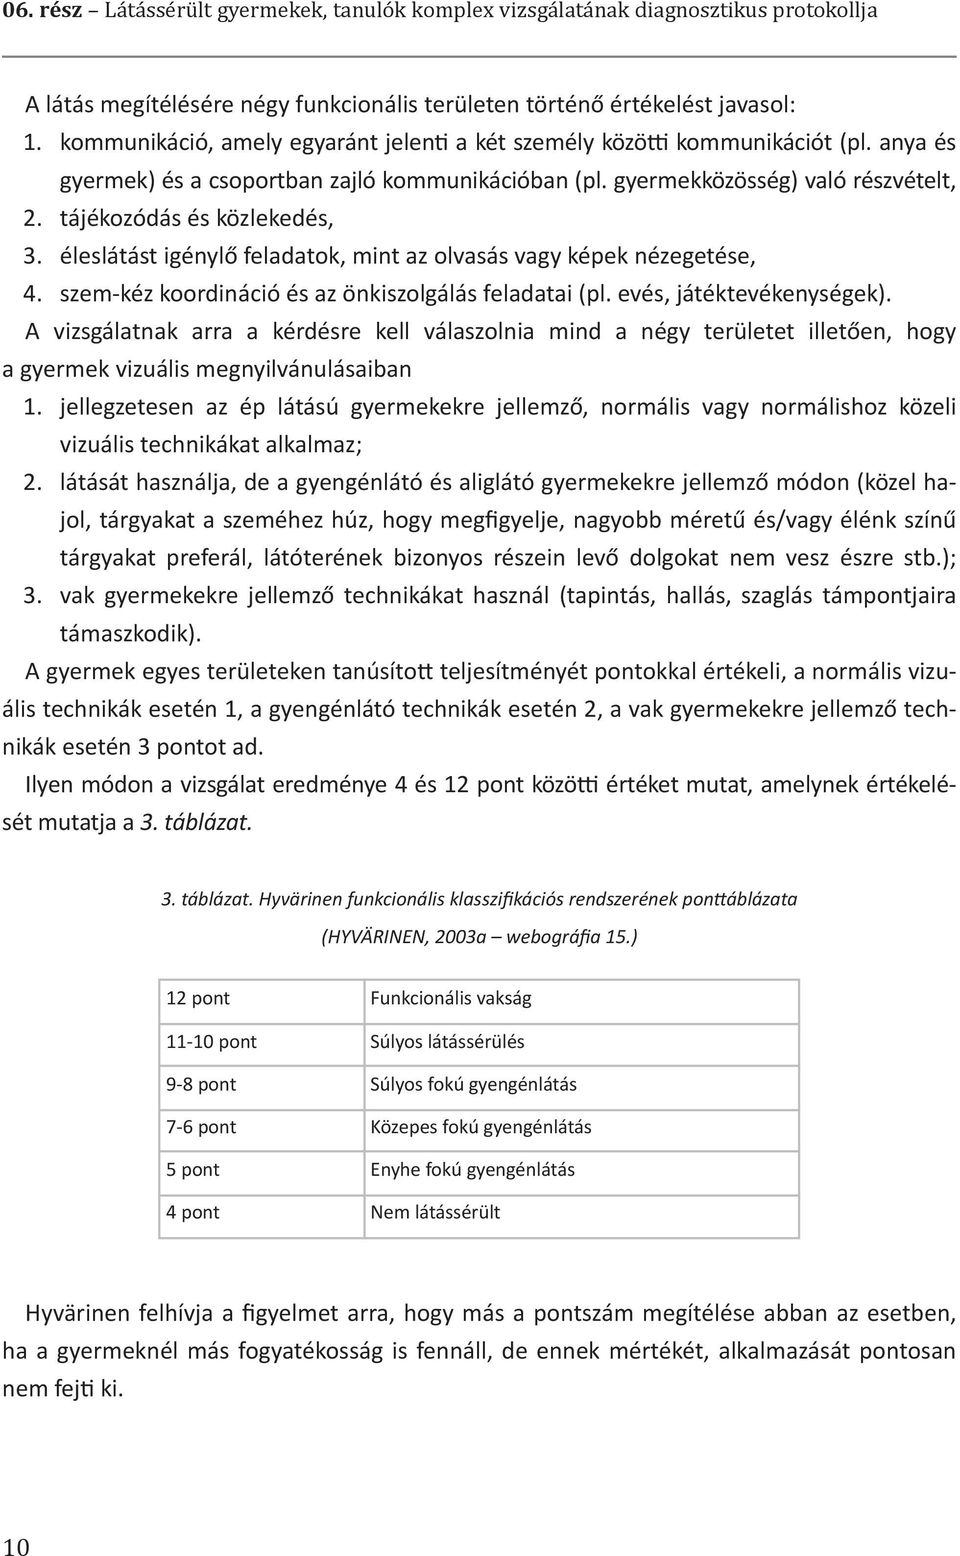 Eszköz a vakok/látássérültek számára - elabe2001.hu - online elektronikai magazin és fórum